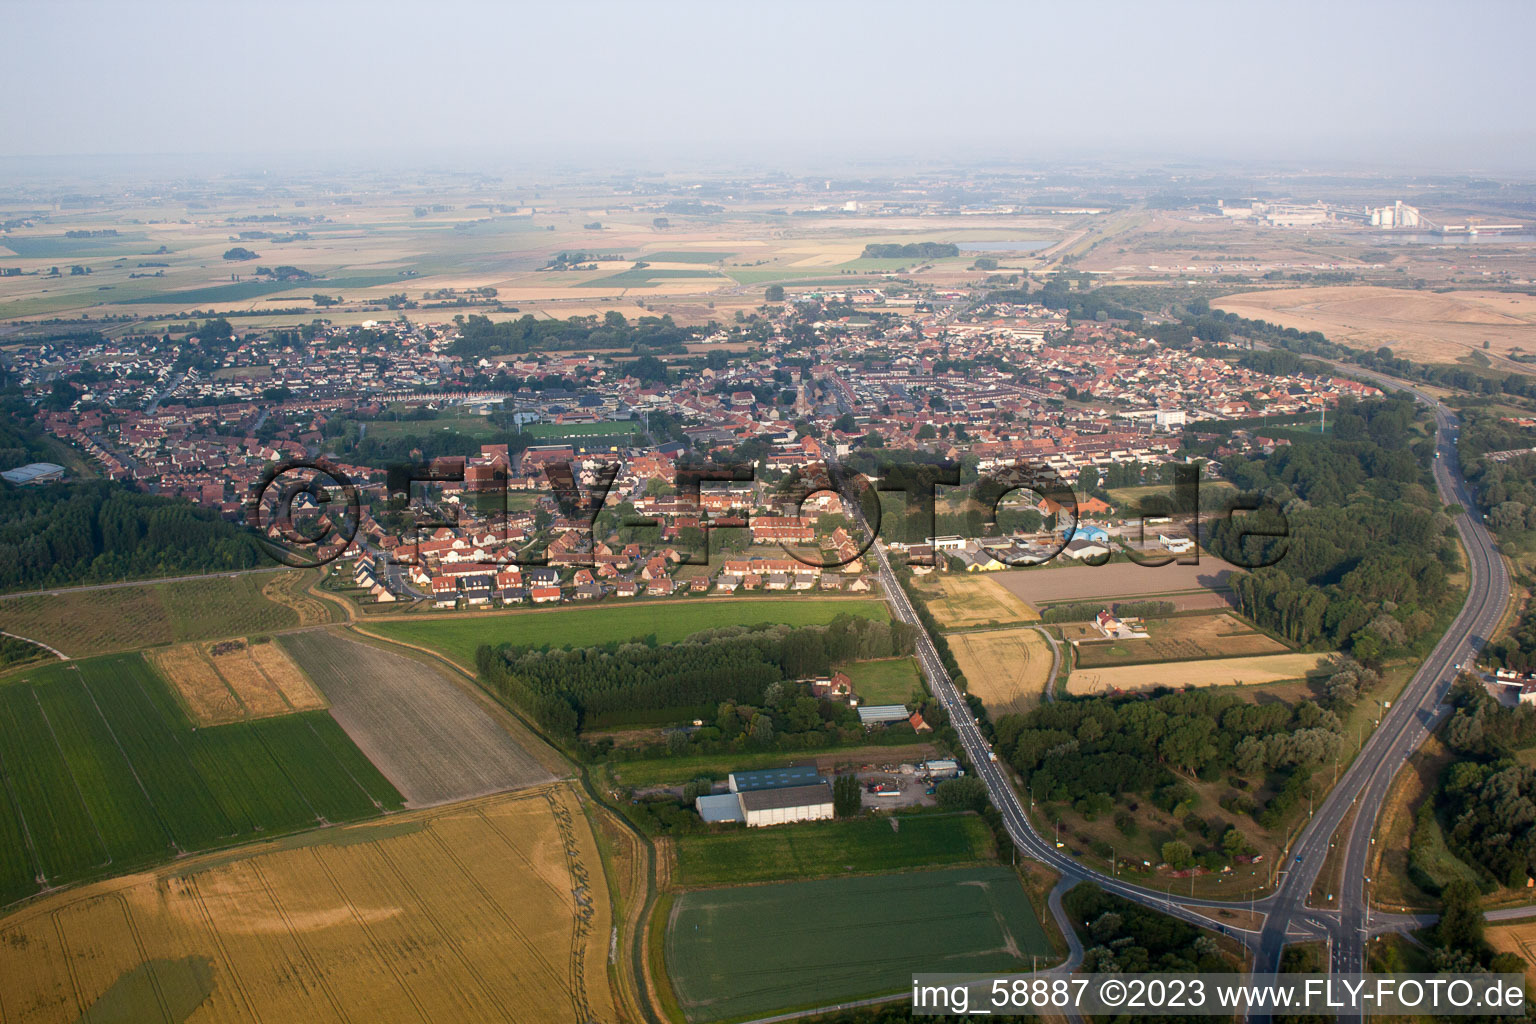 Vue oblique de Loon-Plage dans le département Nord, France